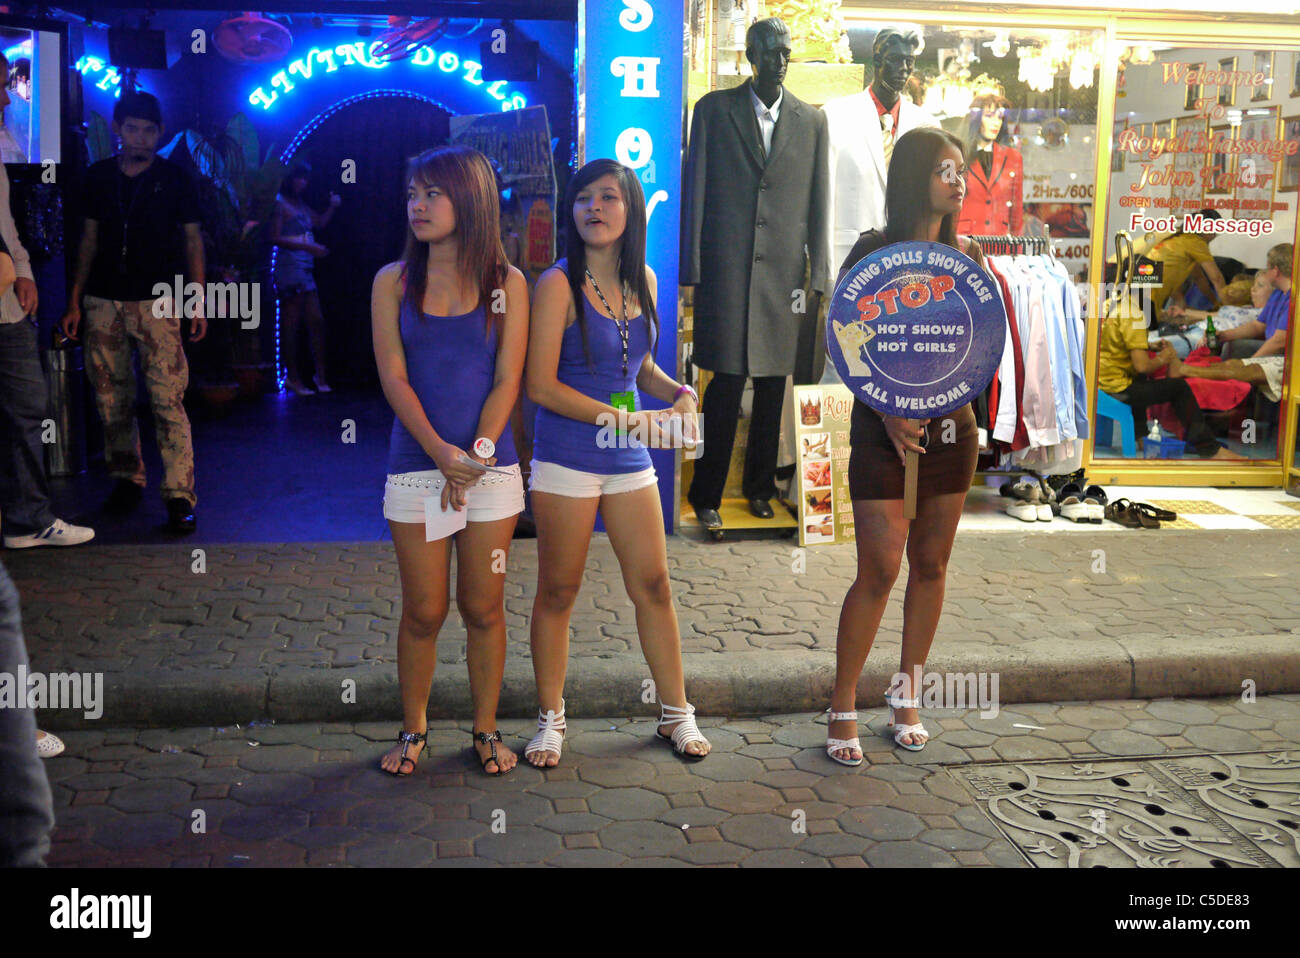 Tourism pattaya thailand prostitutes-hot porn